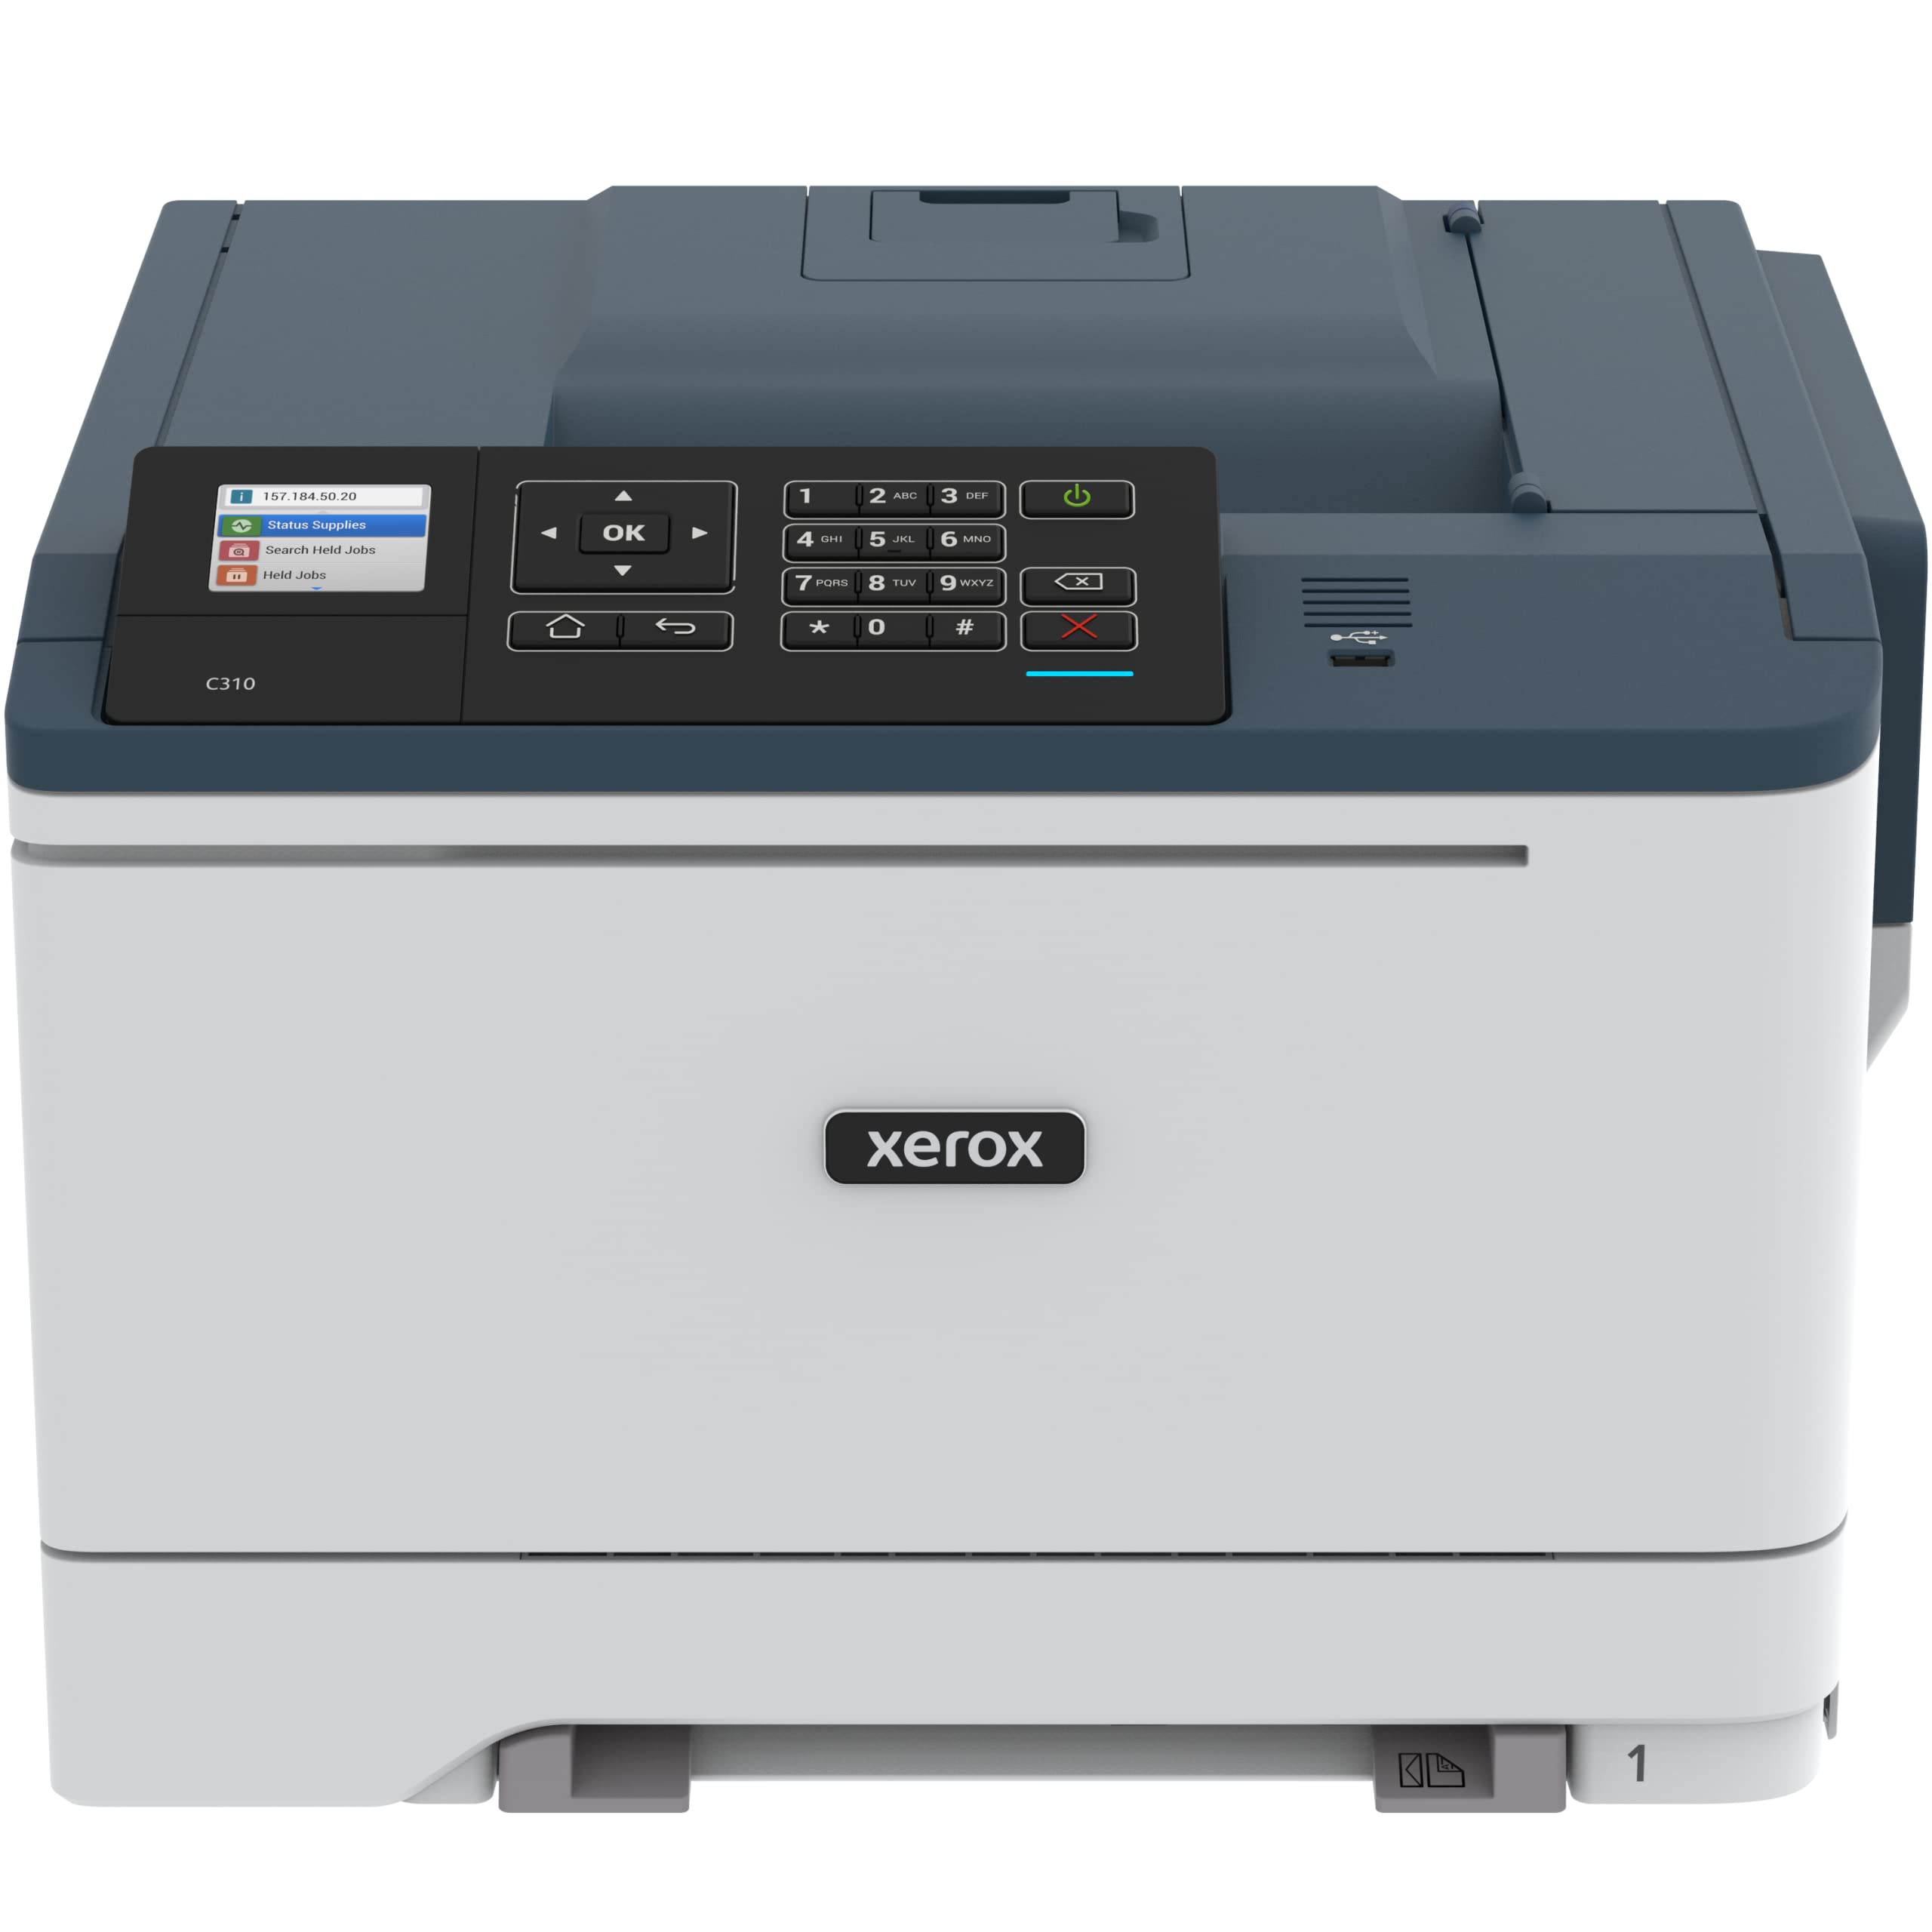 Xerox C310/DNI 무선 컬러 레이저 프린터